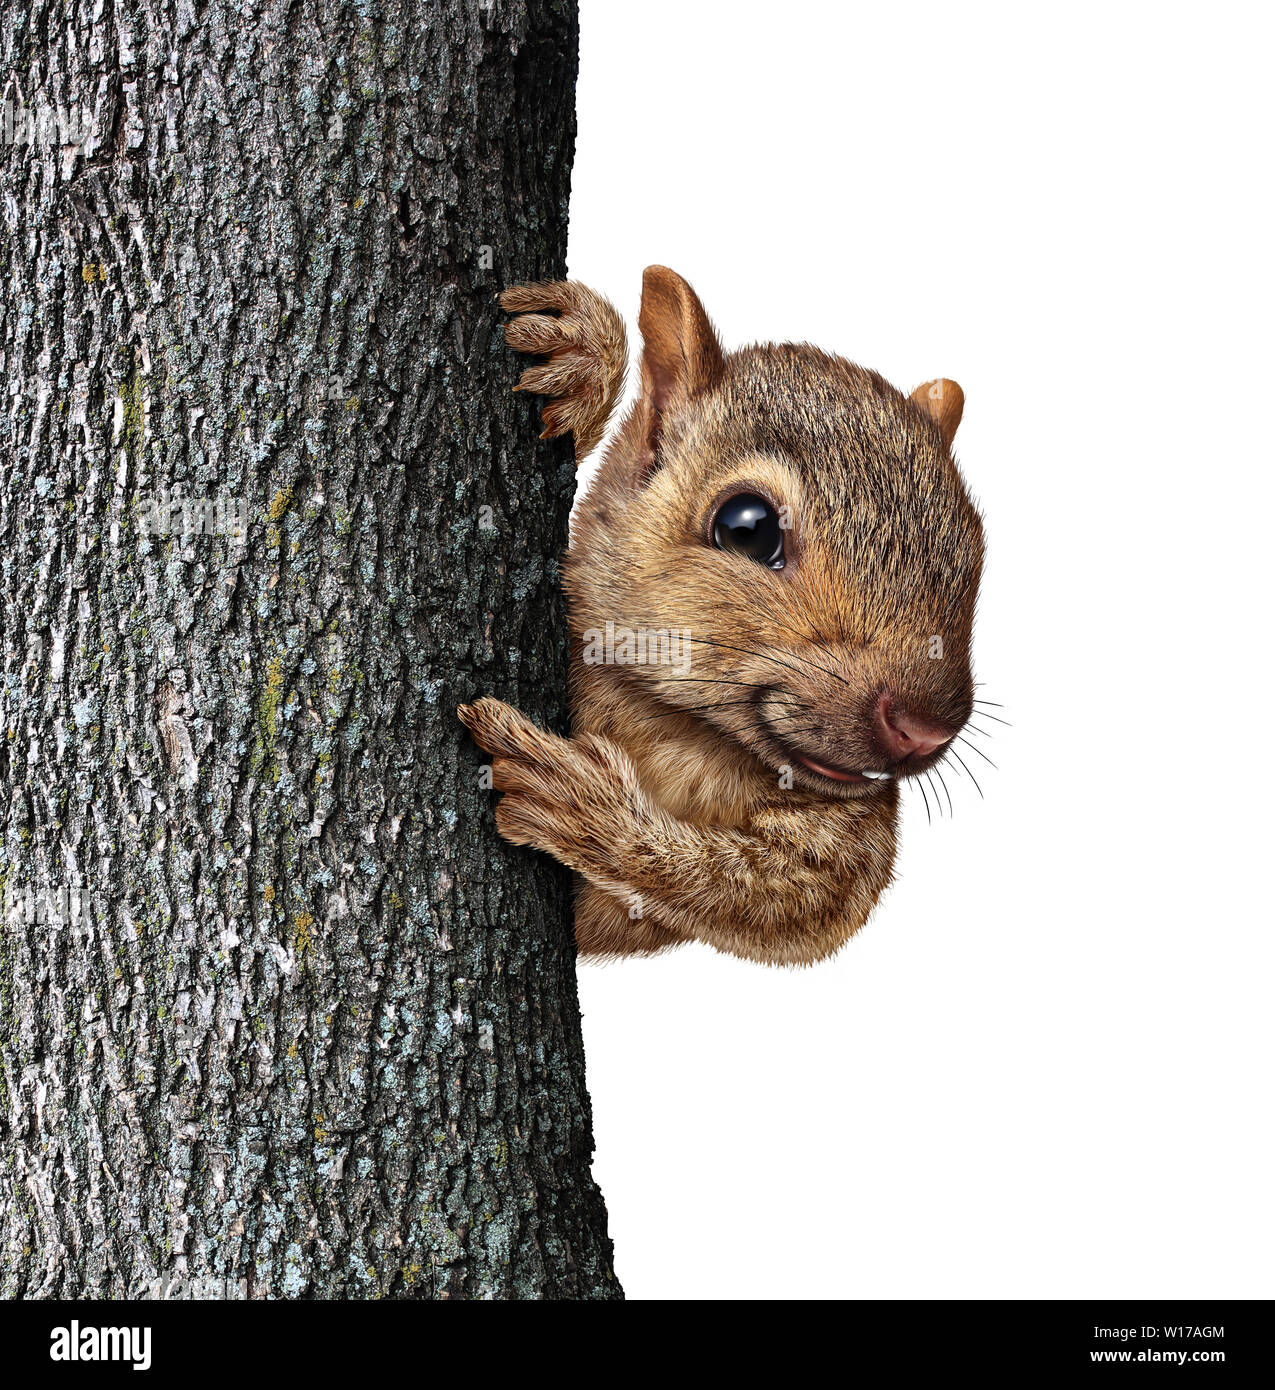 Lo scoiattolo dietro ad un albero di corteccia di contenimento con realistica la pelliccia e zampe come un amichevole simpatico roditore peloso carattere come un importante e particolare messaggio. Foto Stock